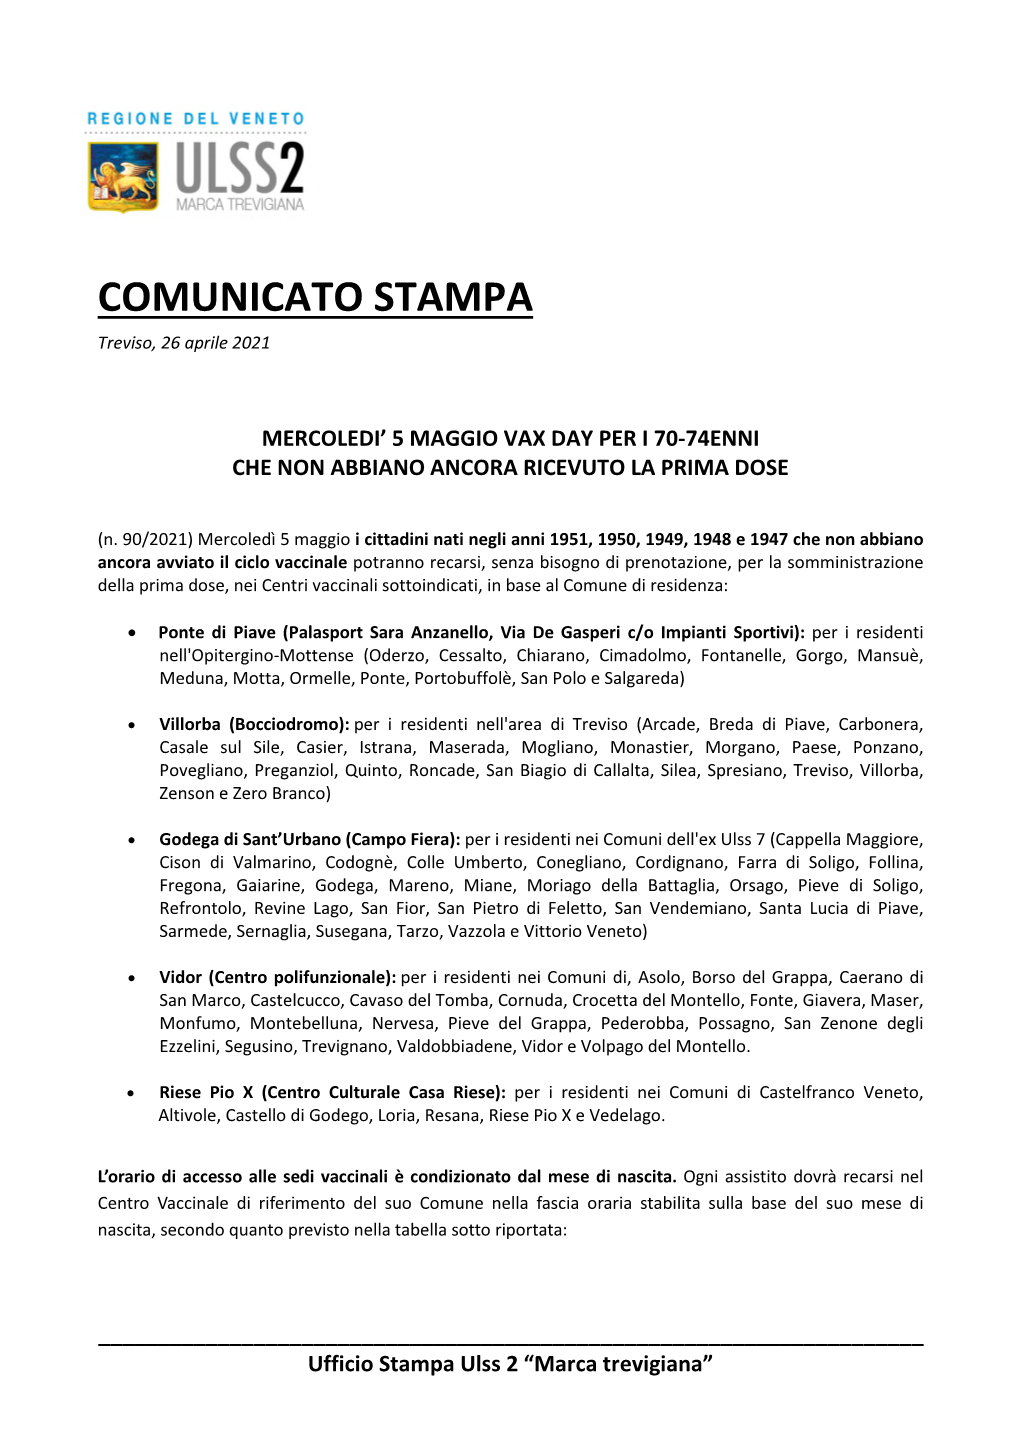 COMUNICATO STAMPA Treviso, 26 Aprile 2021